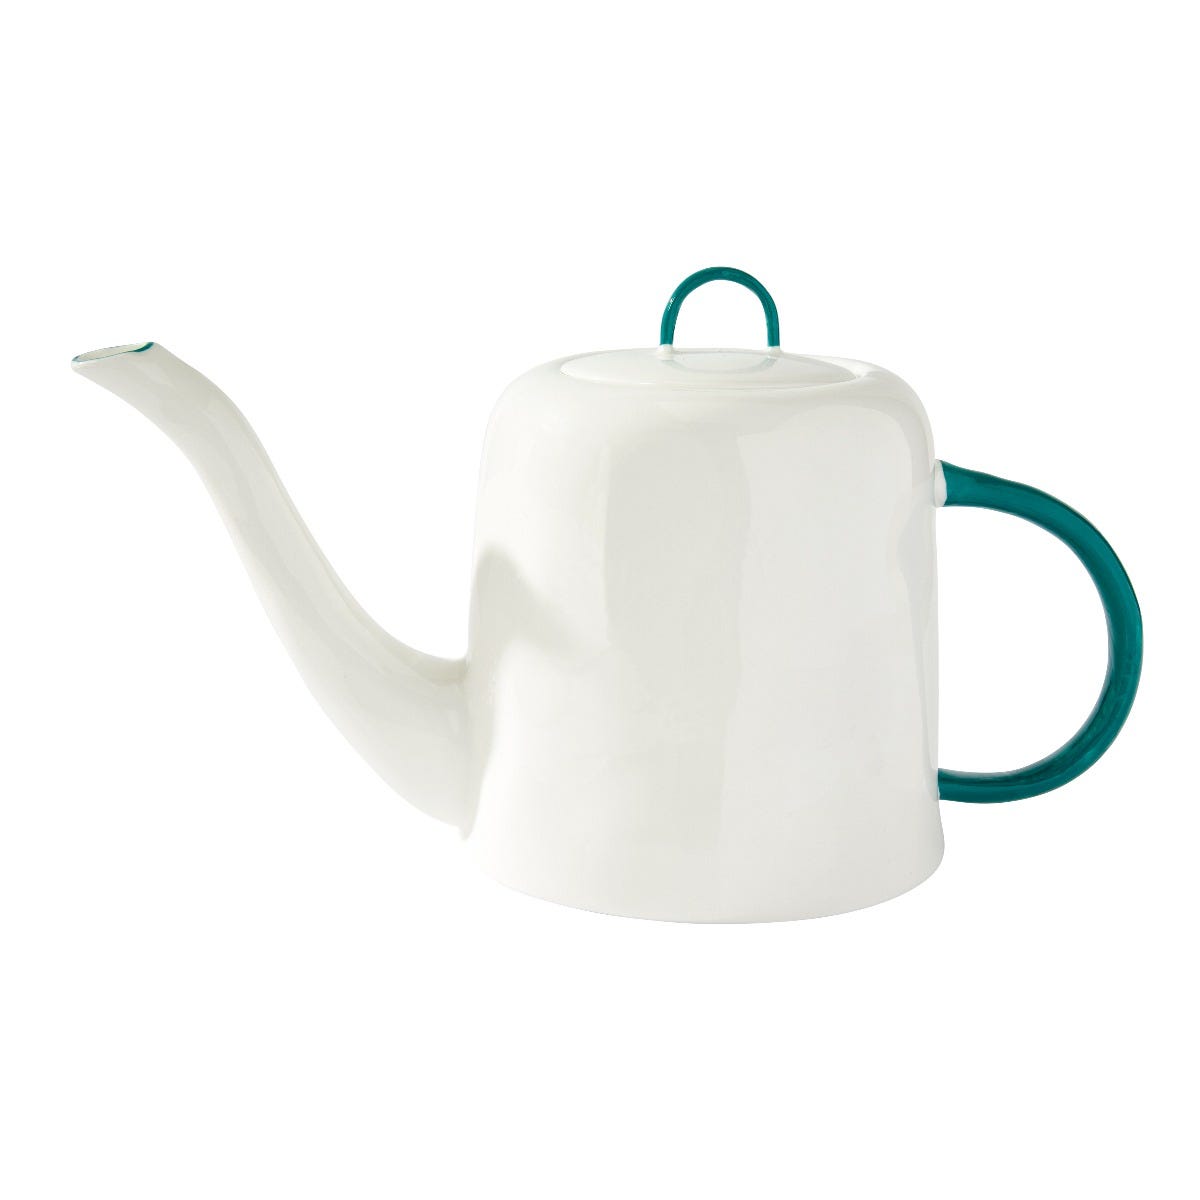 Teapot in Teal, Feldspar